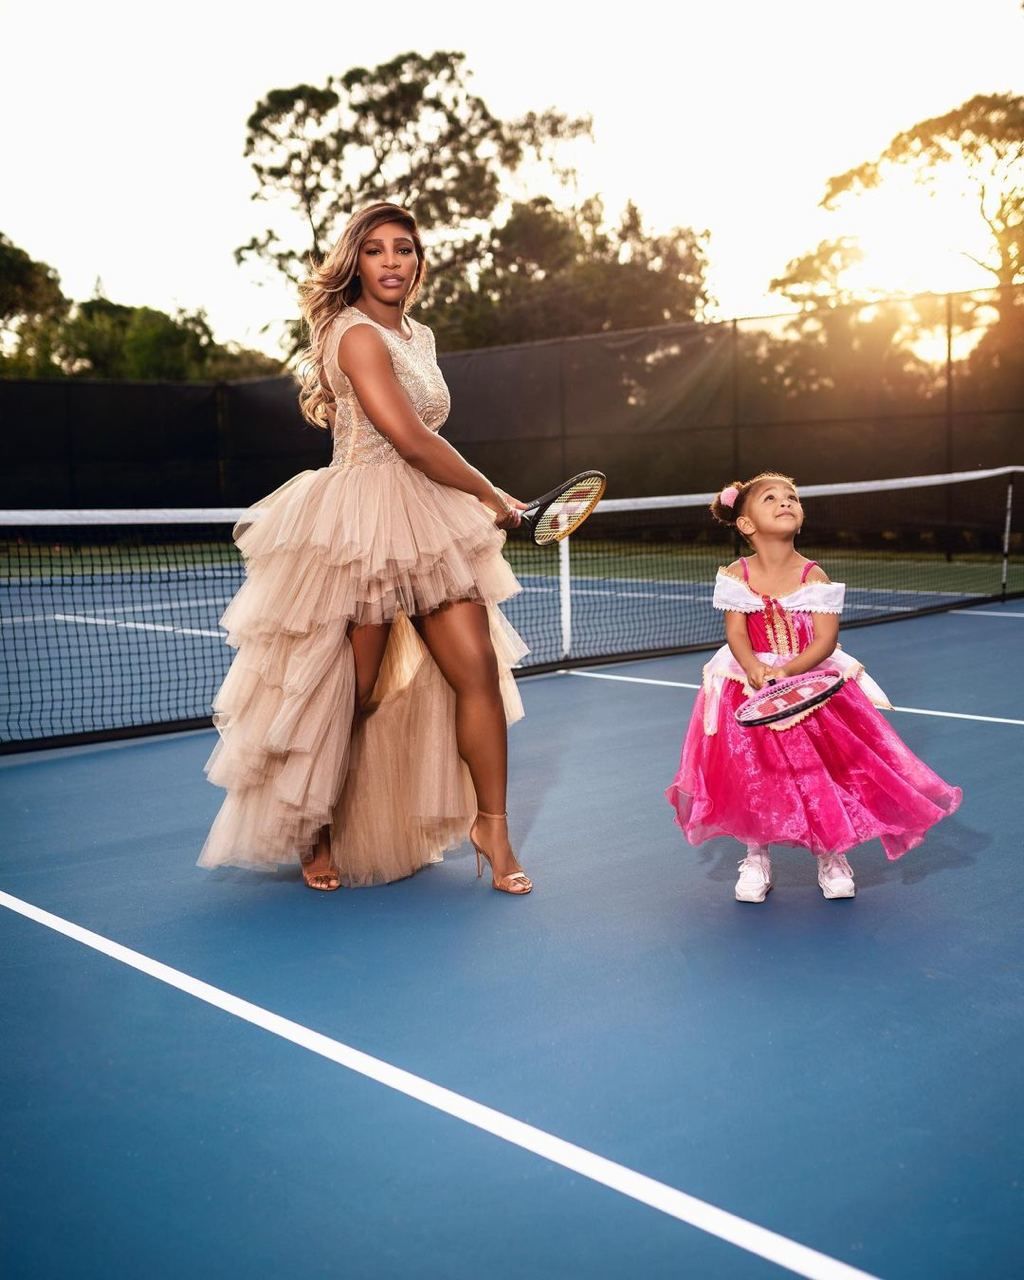 Серена Уильямс показала фанатам милые фото с дочкой в пышных платьях на корте 3